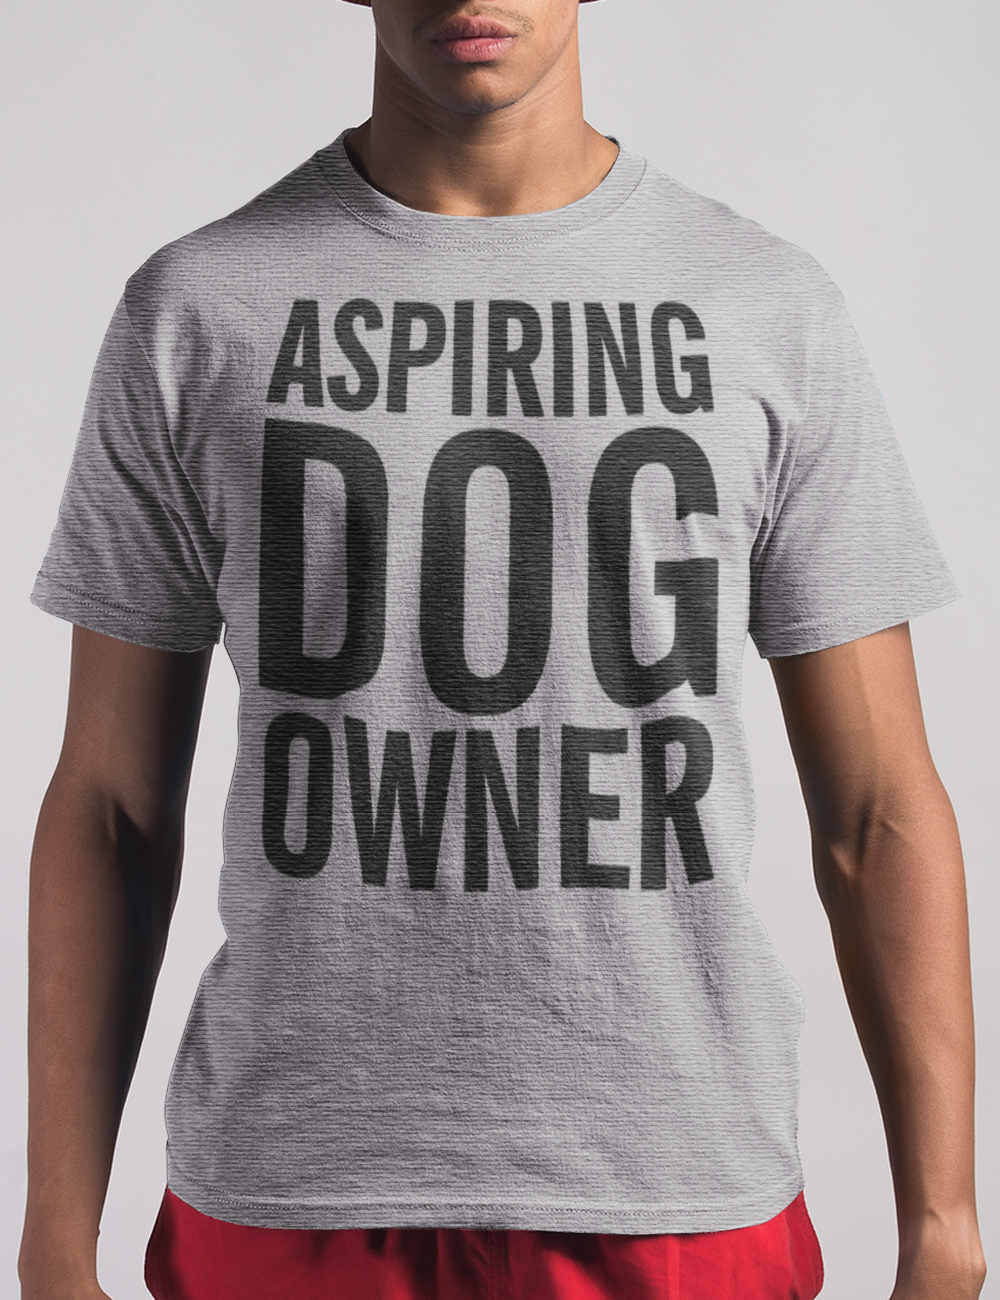 Aspiring Dog Owner | T-Shirt OniTakai